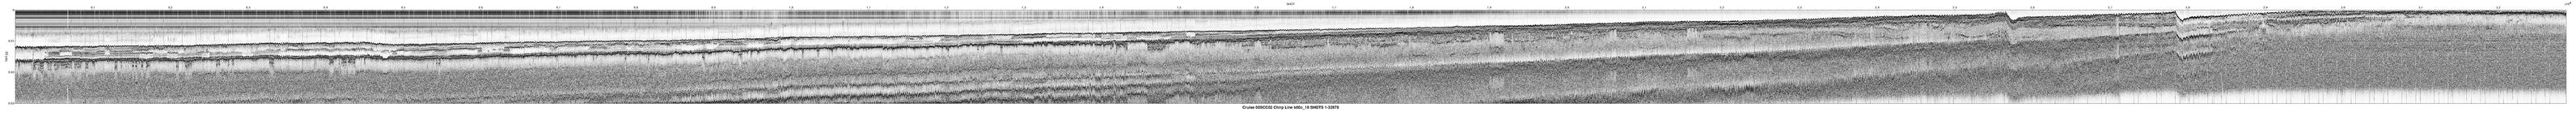 00SCC02 b00c_18 seismic profile image